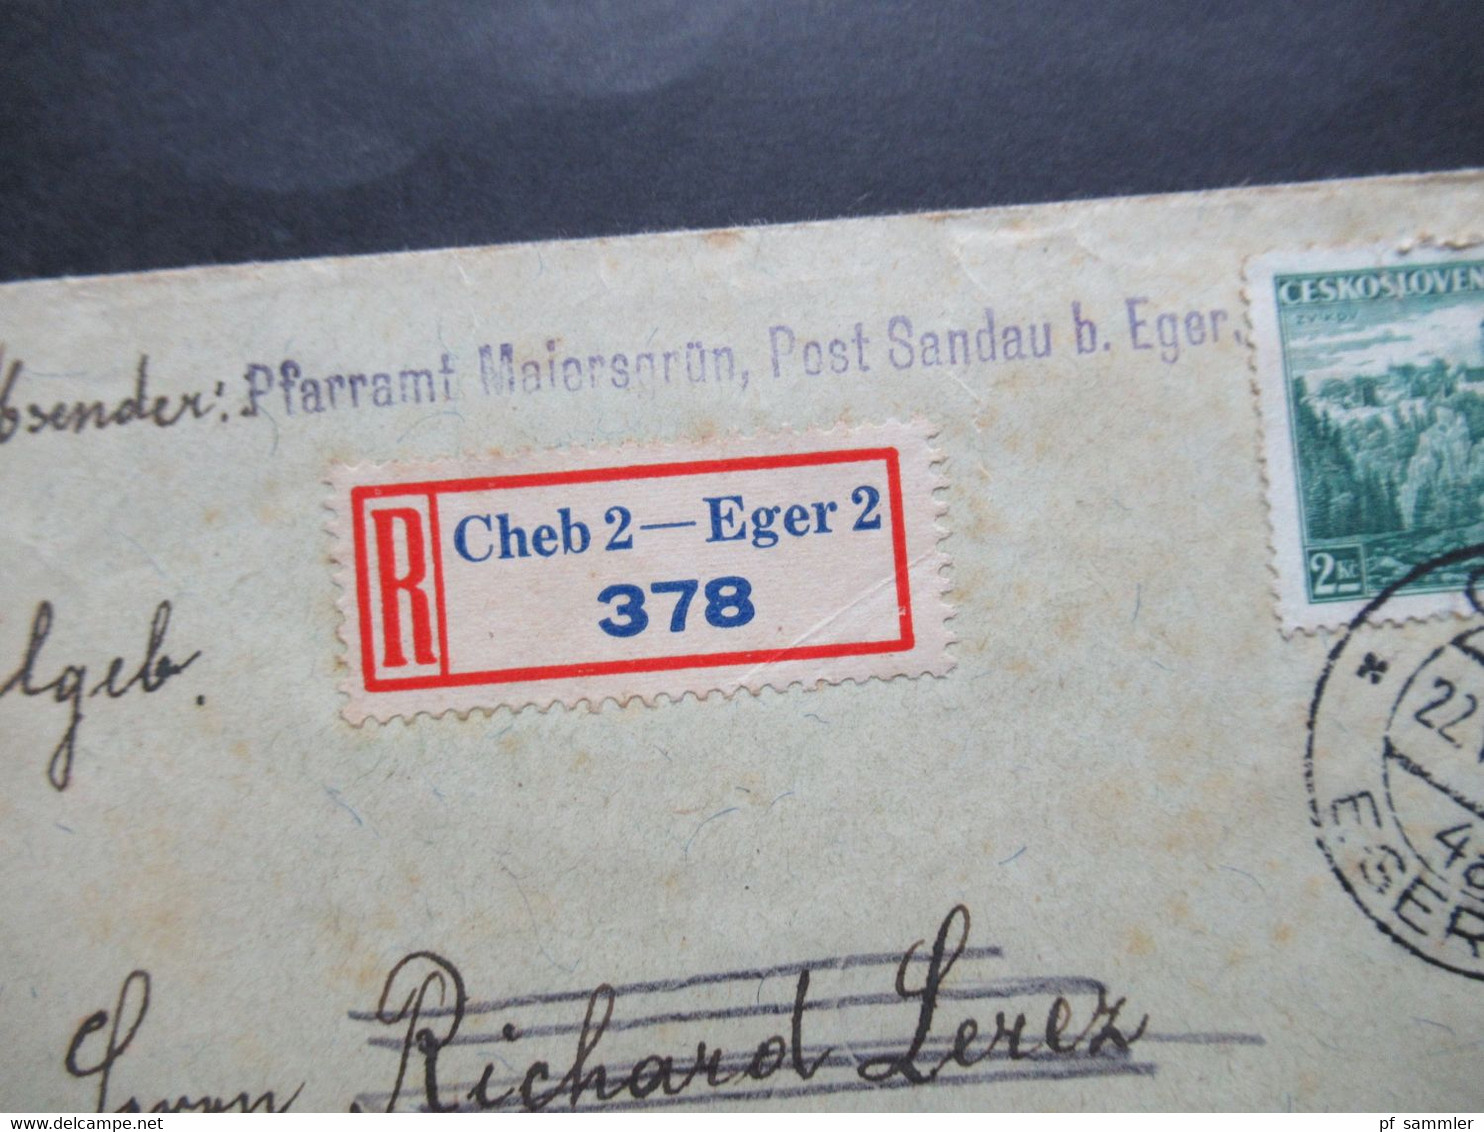 CSSR 1938 Remboursement / Nachnahme / Einschreiben Cheb 2 - Eger 2 Nach Königsberg Abs: Pfarramt Maiersgrün Post Sandau - Briefe U. Dokumente